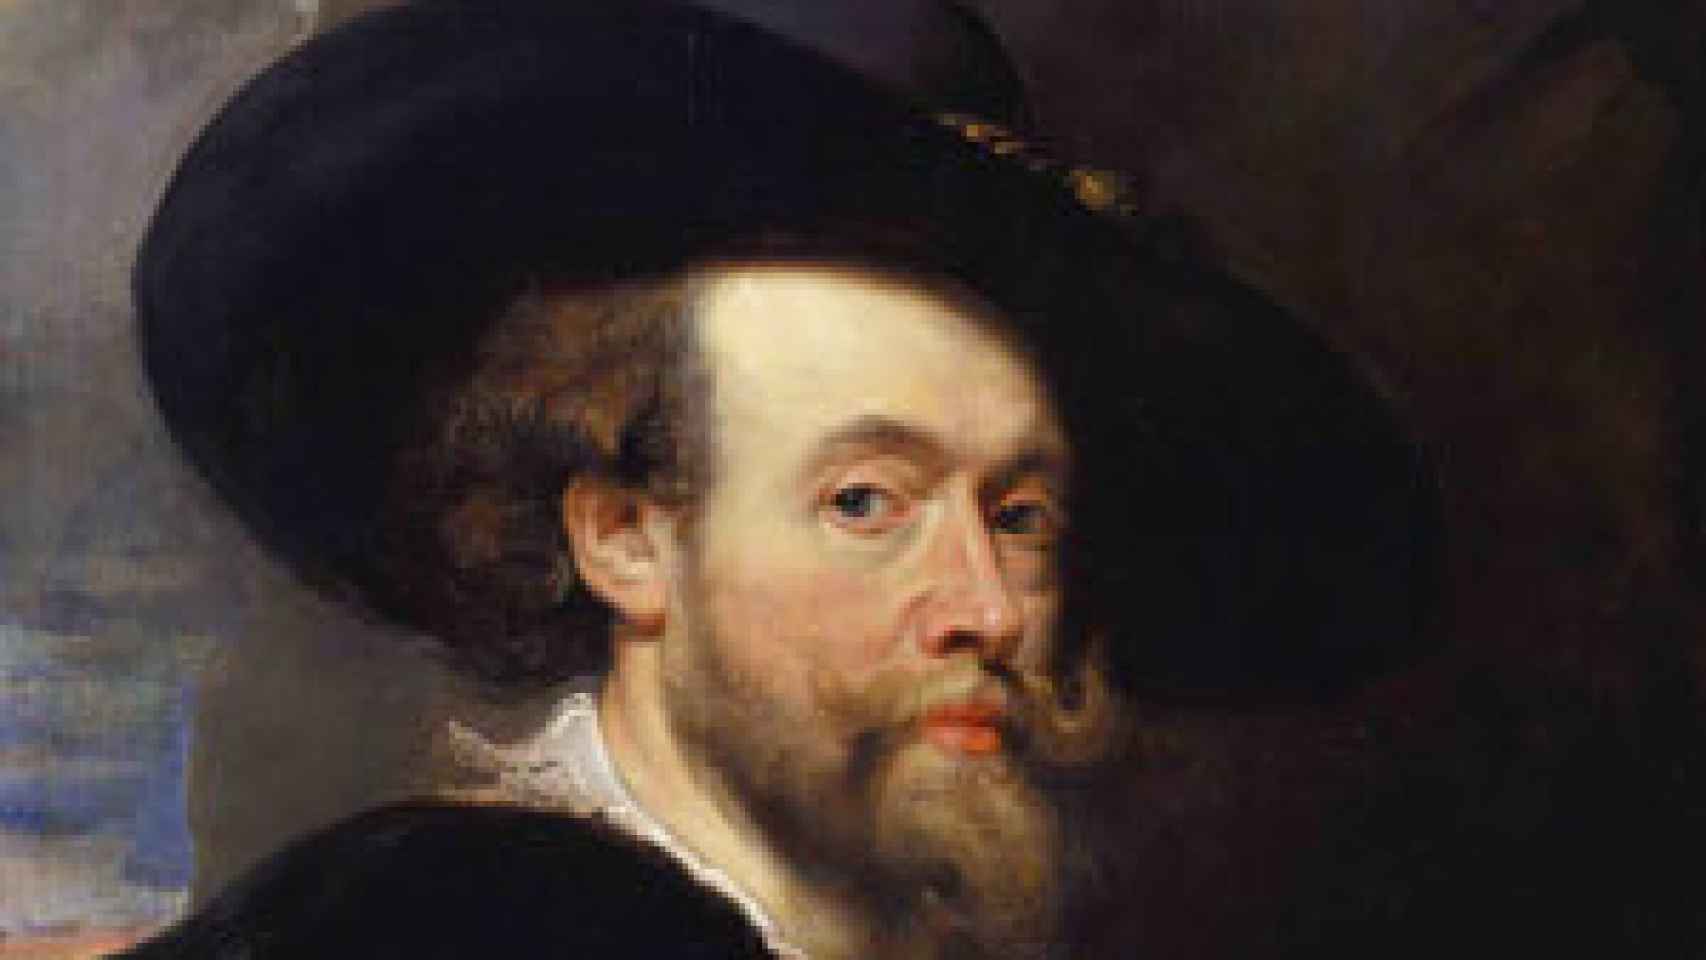 Image: Rubens. El maestro de las sombras